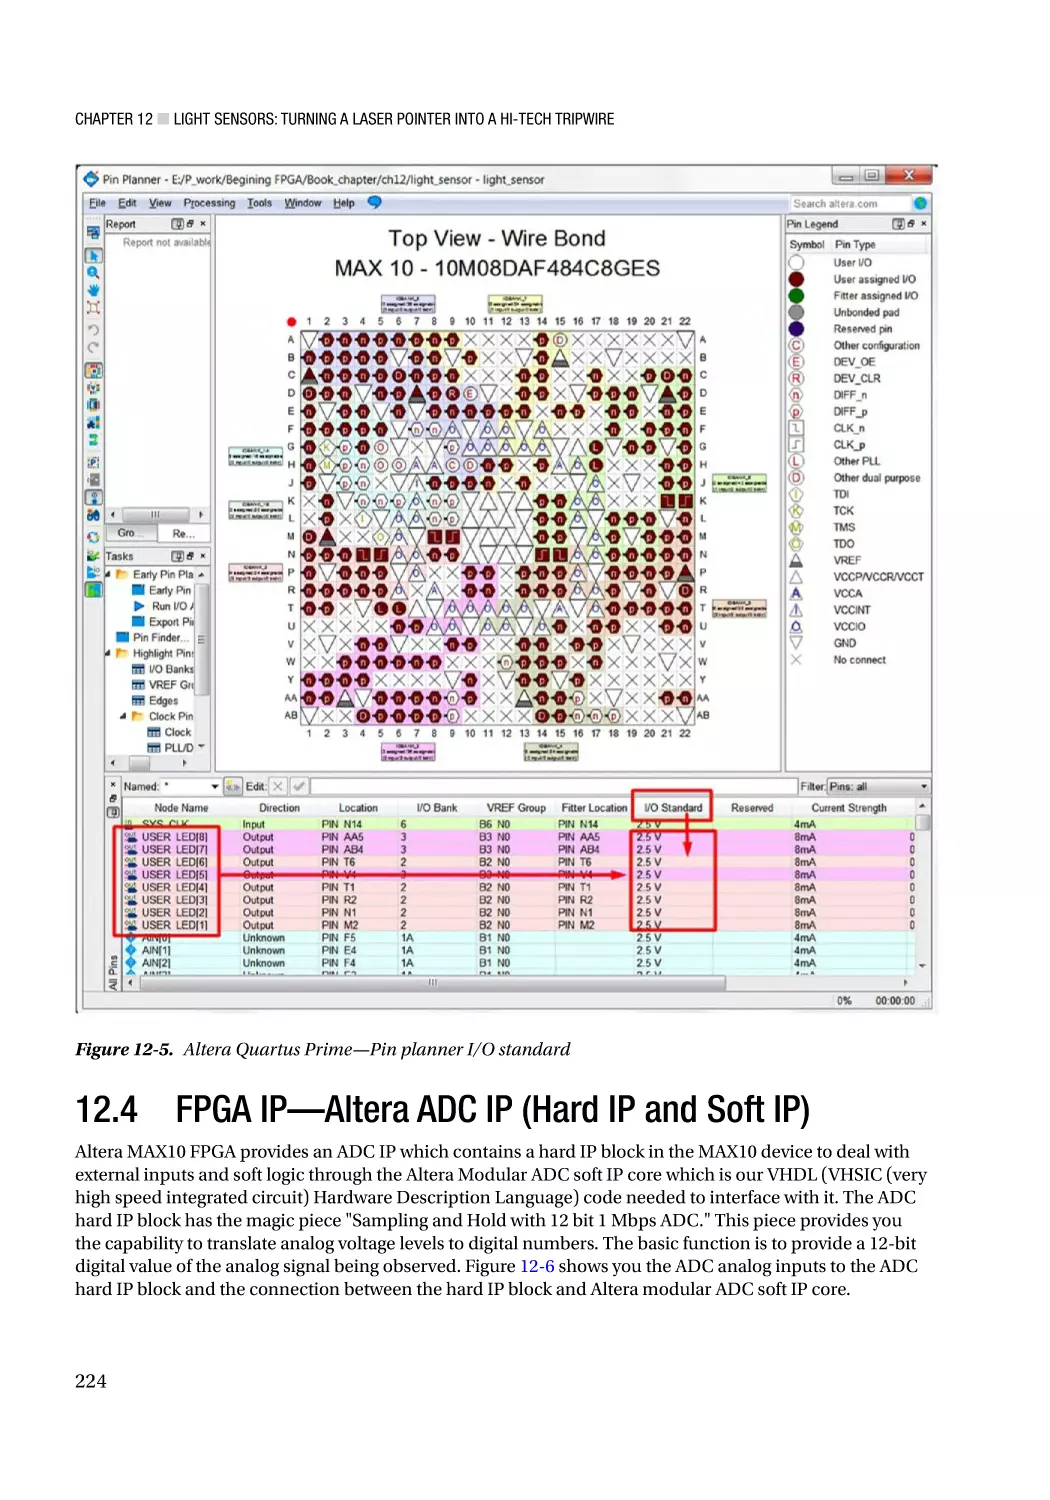 12.4 FPGA IP—Altera ADC IP (Hard IP and Soft IP)